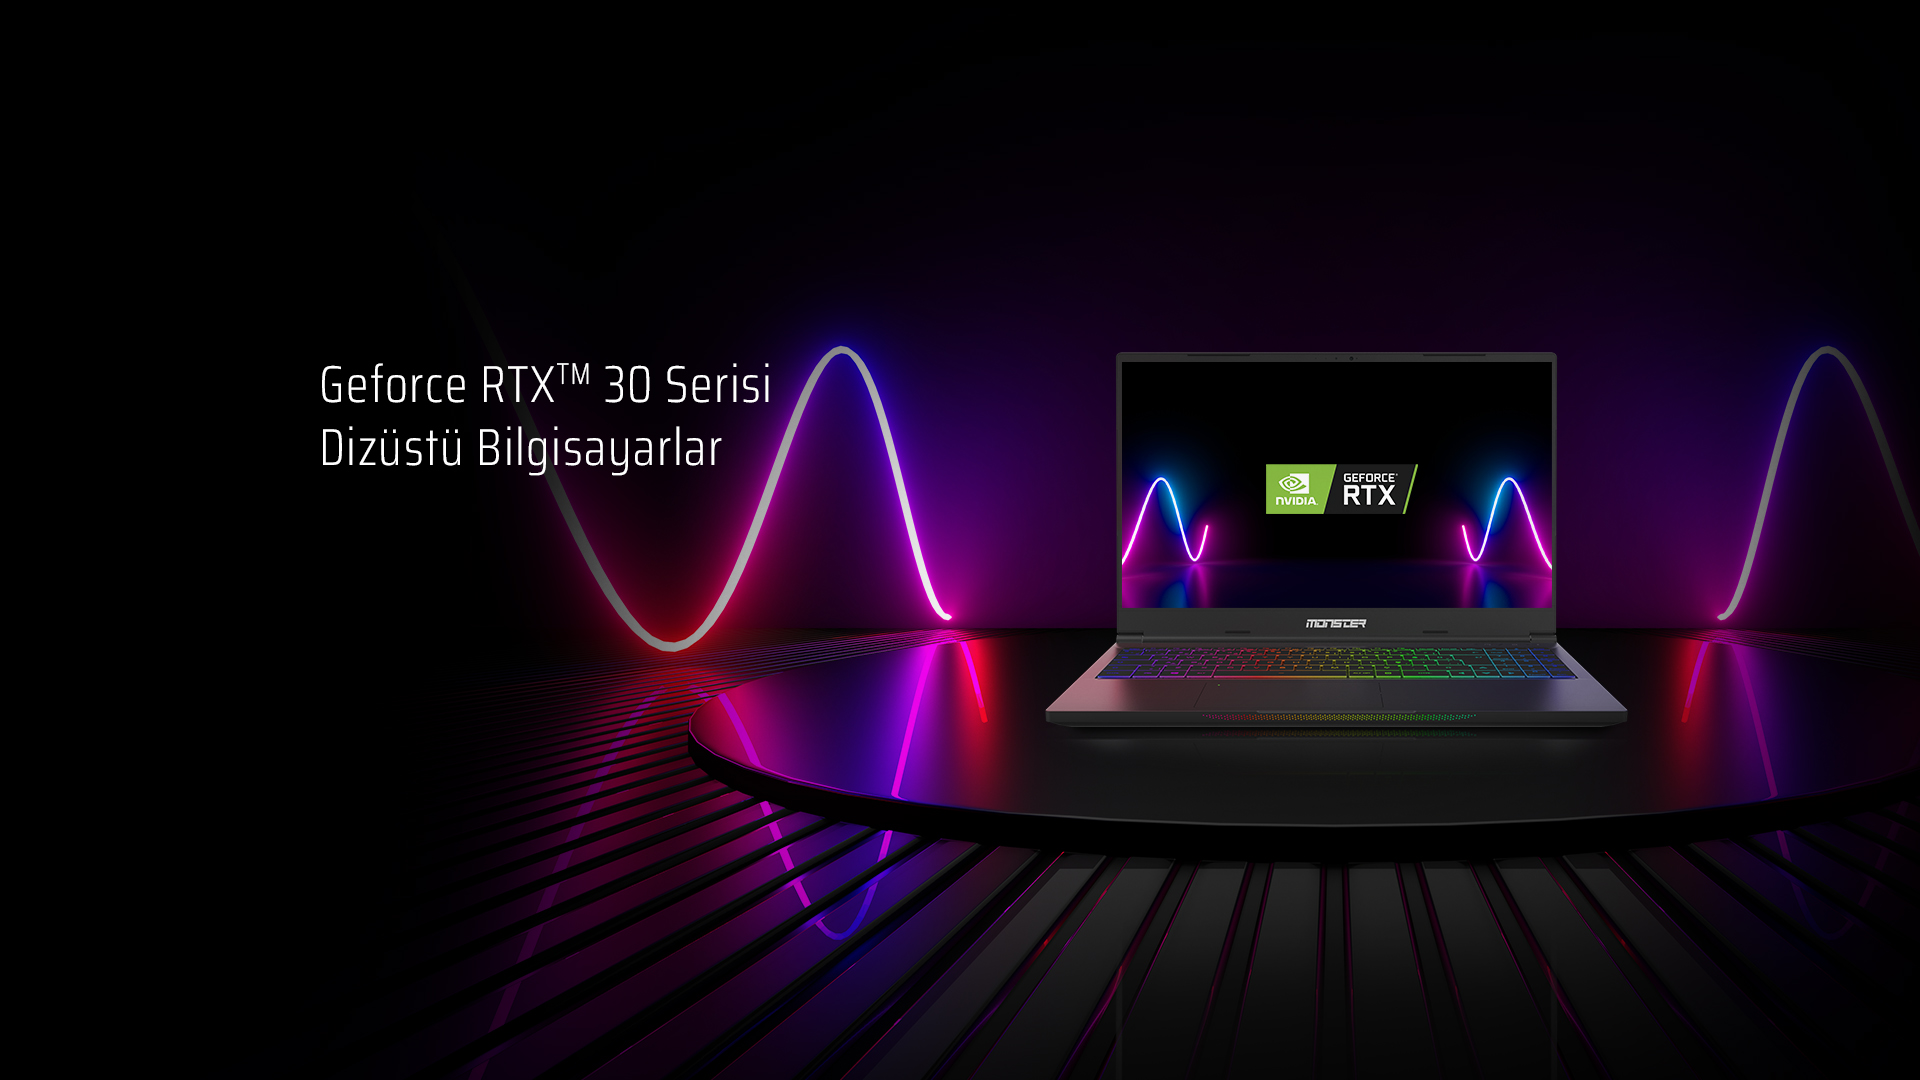 NVIDIA GeForce RTX Ekran Kartları ile Sınırları Zorlayın: GeForce RTX 30'lu  Monster Notebook Modelleri - Technopat